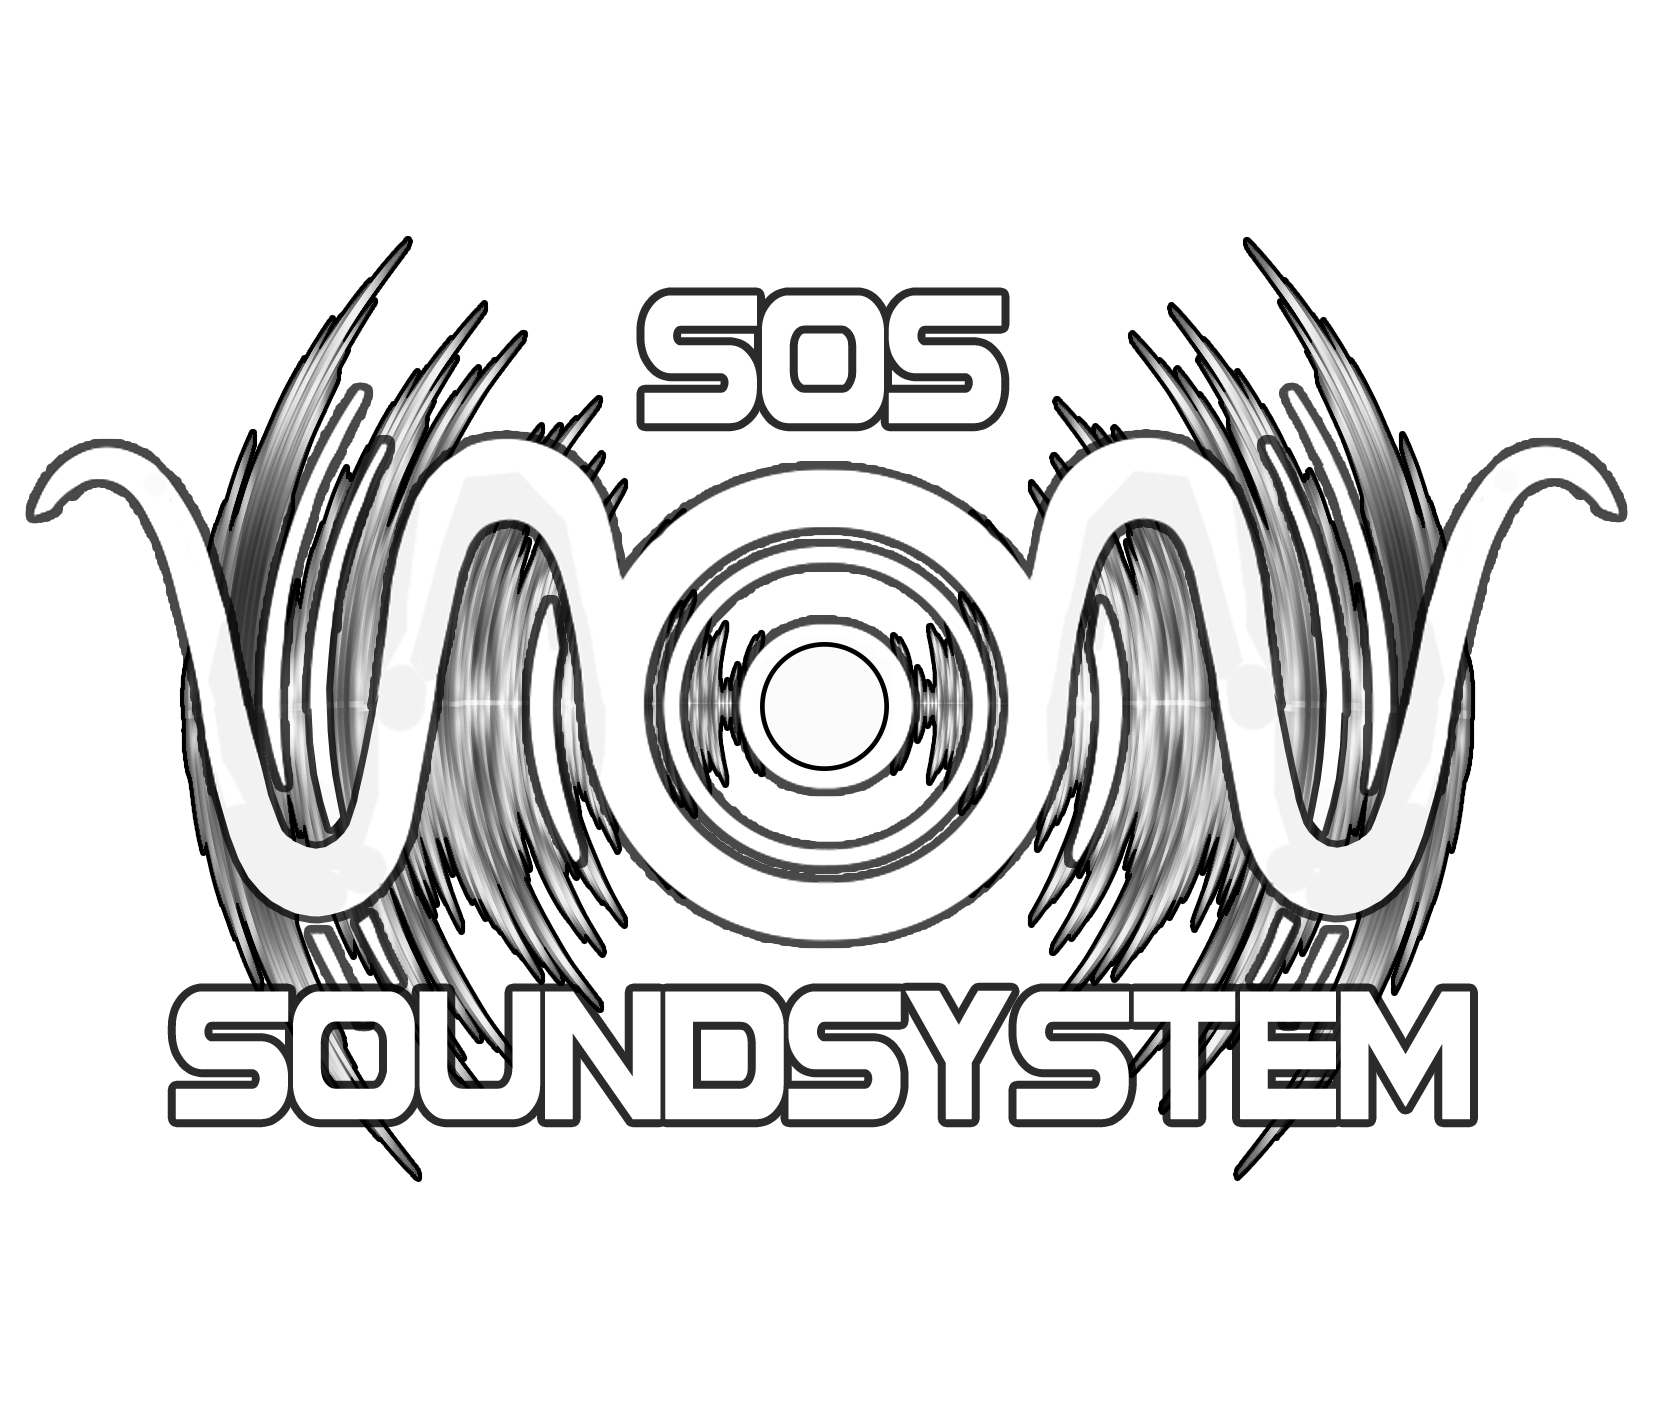 S.O.S Soundsystem